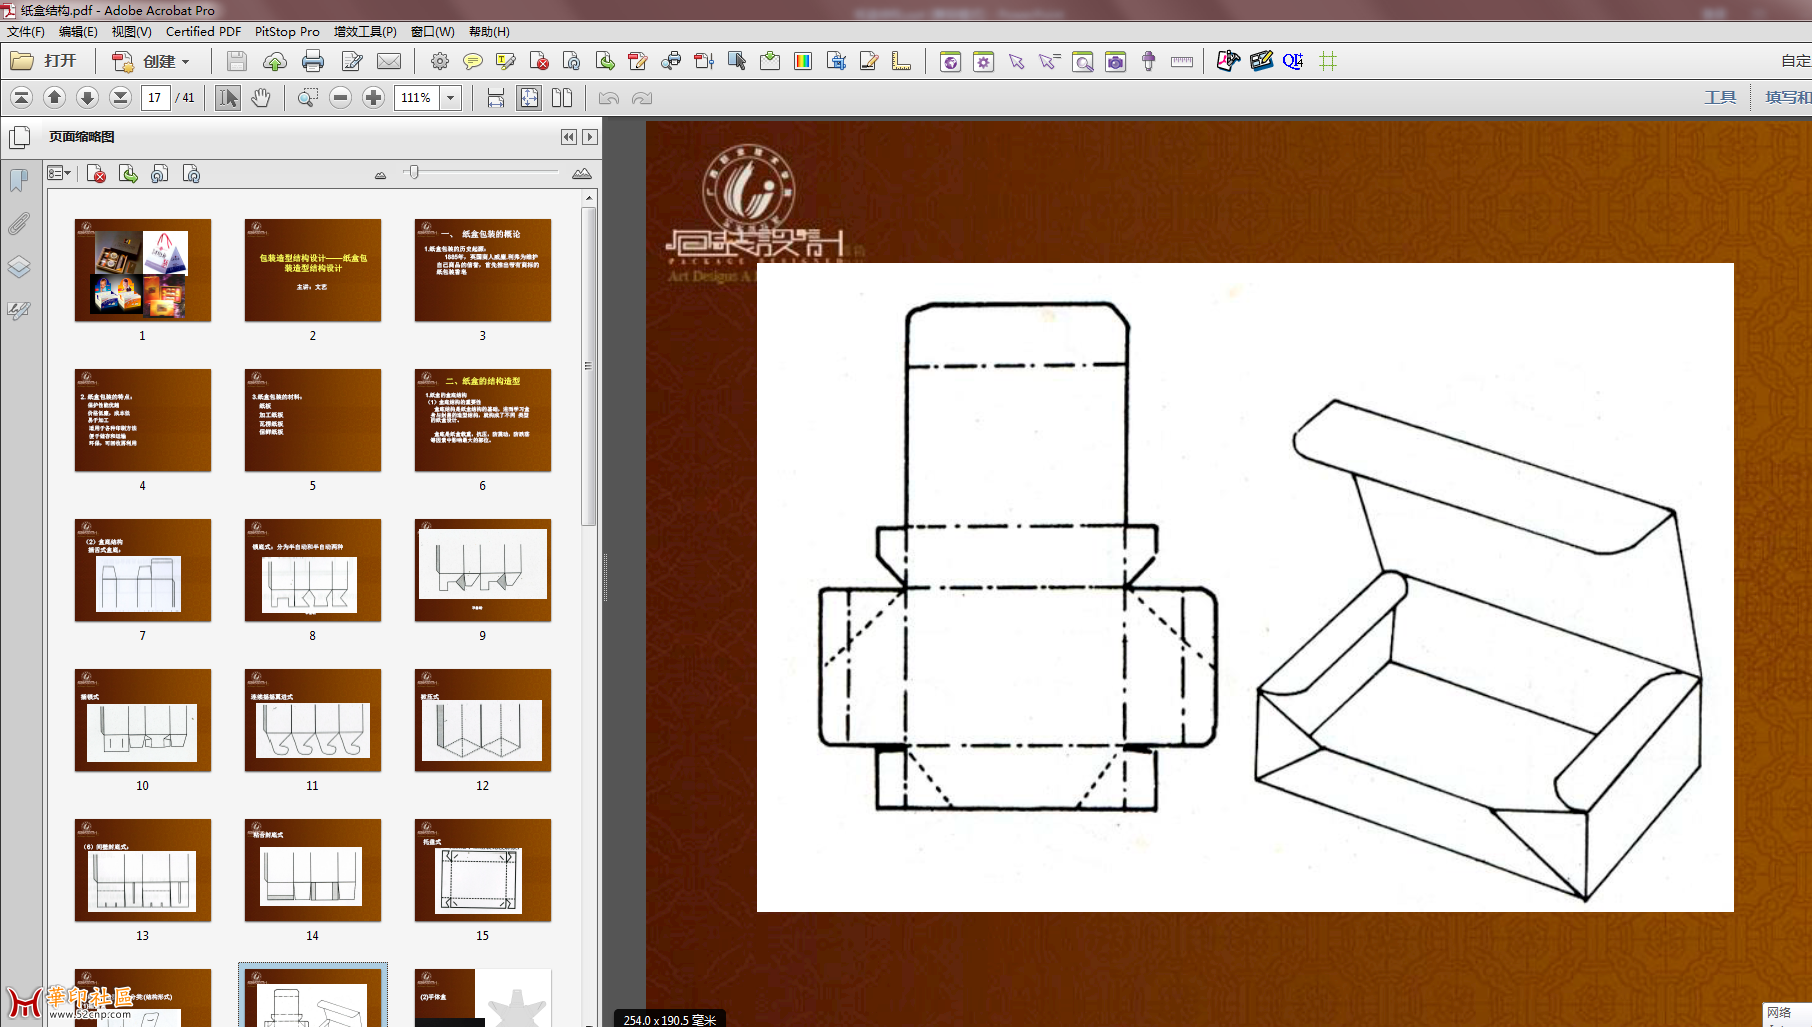 包装造型结构设计――纸盒包装造型结构设计{tag}(1)